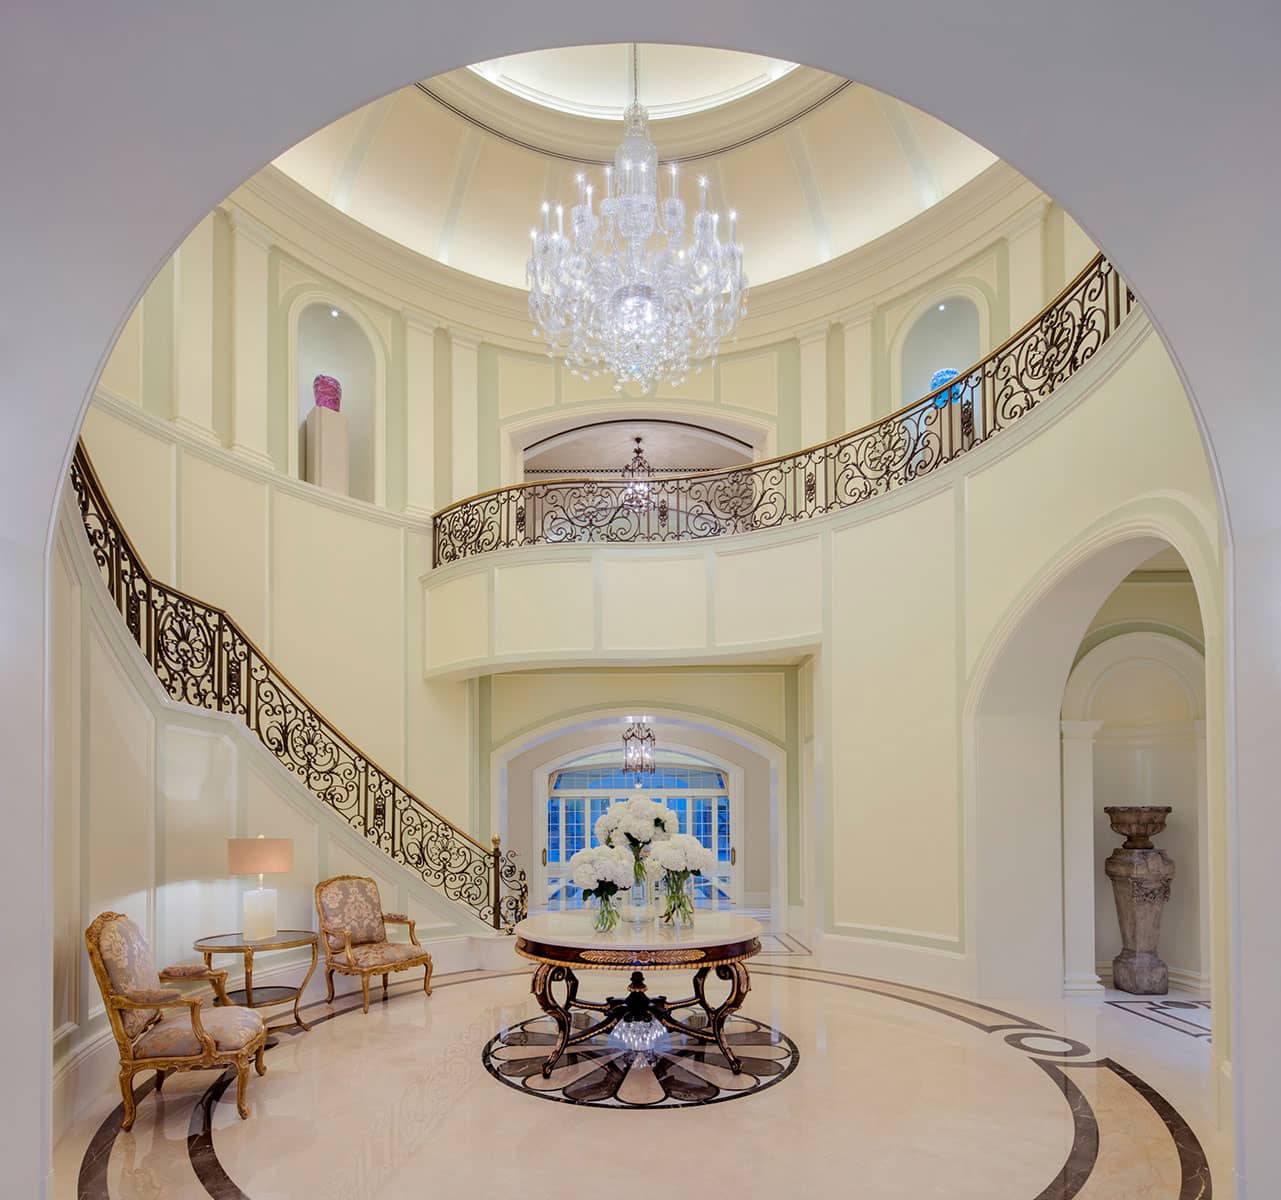 Architecture Photography Dubai: Classical Design of lobby in private Villa, Dubai.